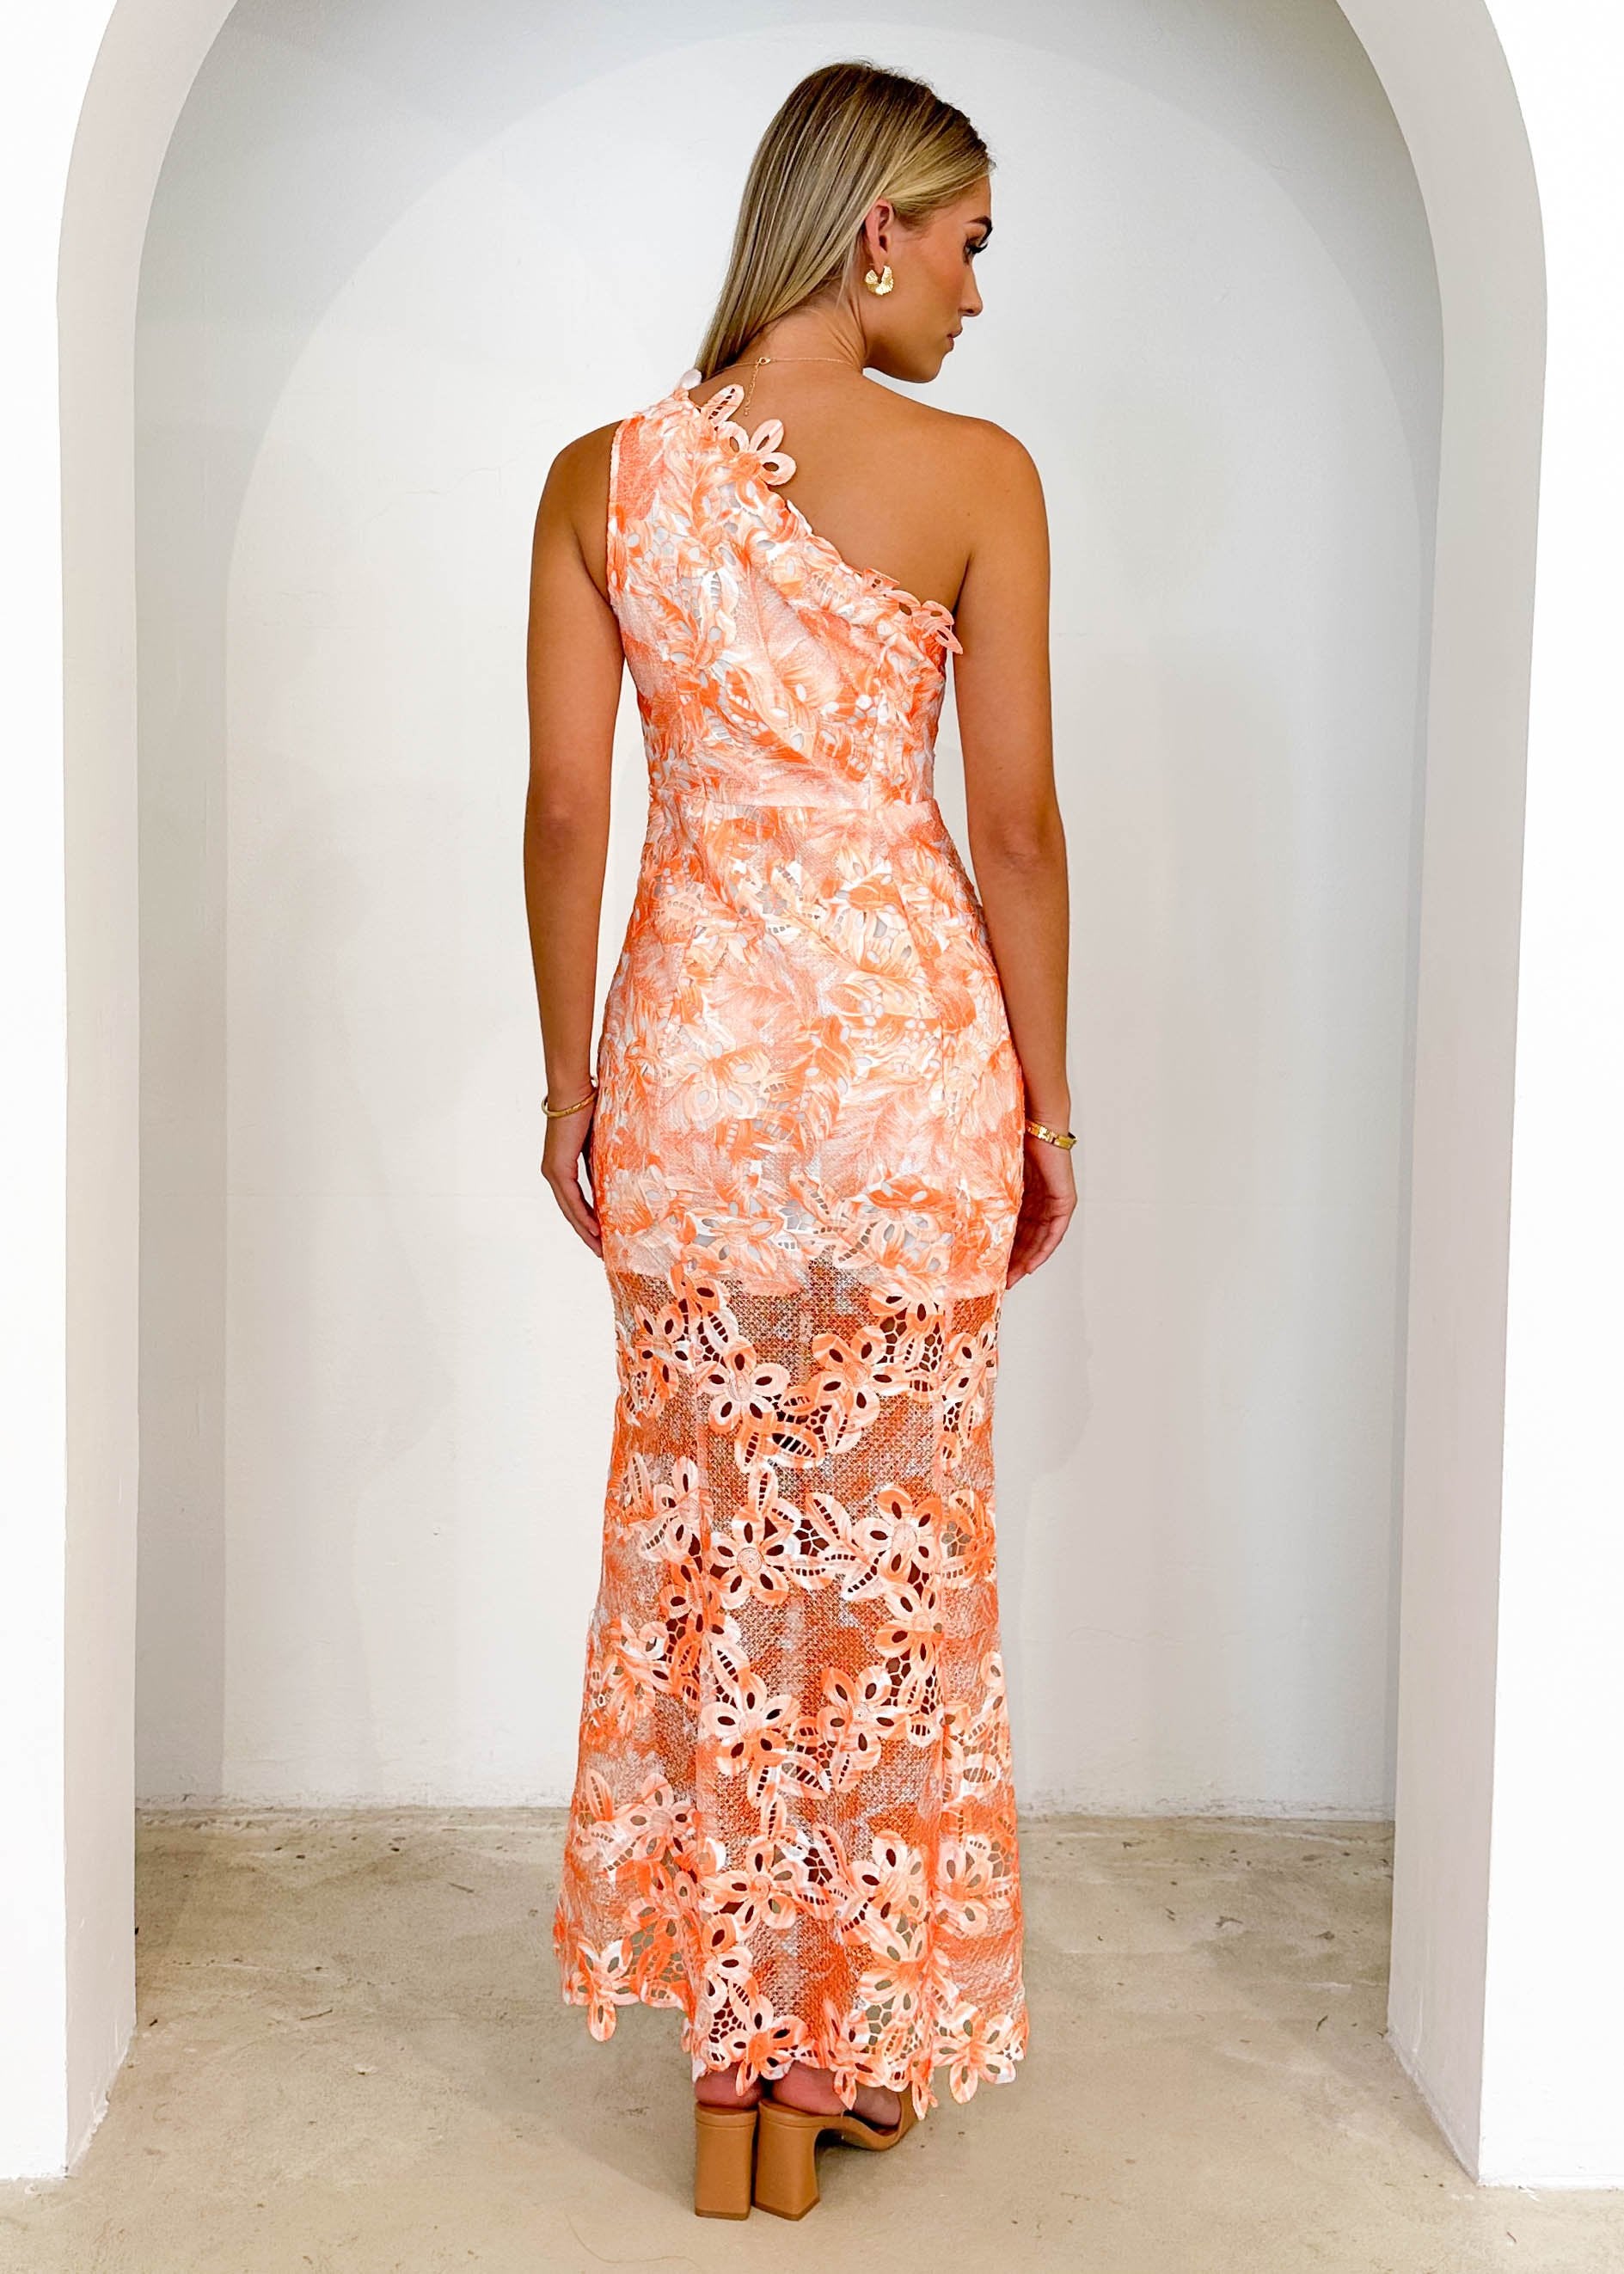 Krestra One Shoulder Midi Dress - Orange Floral